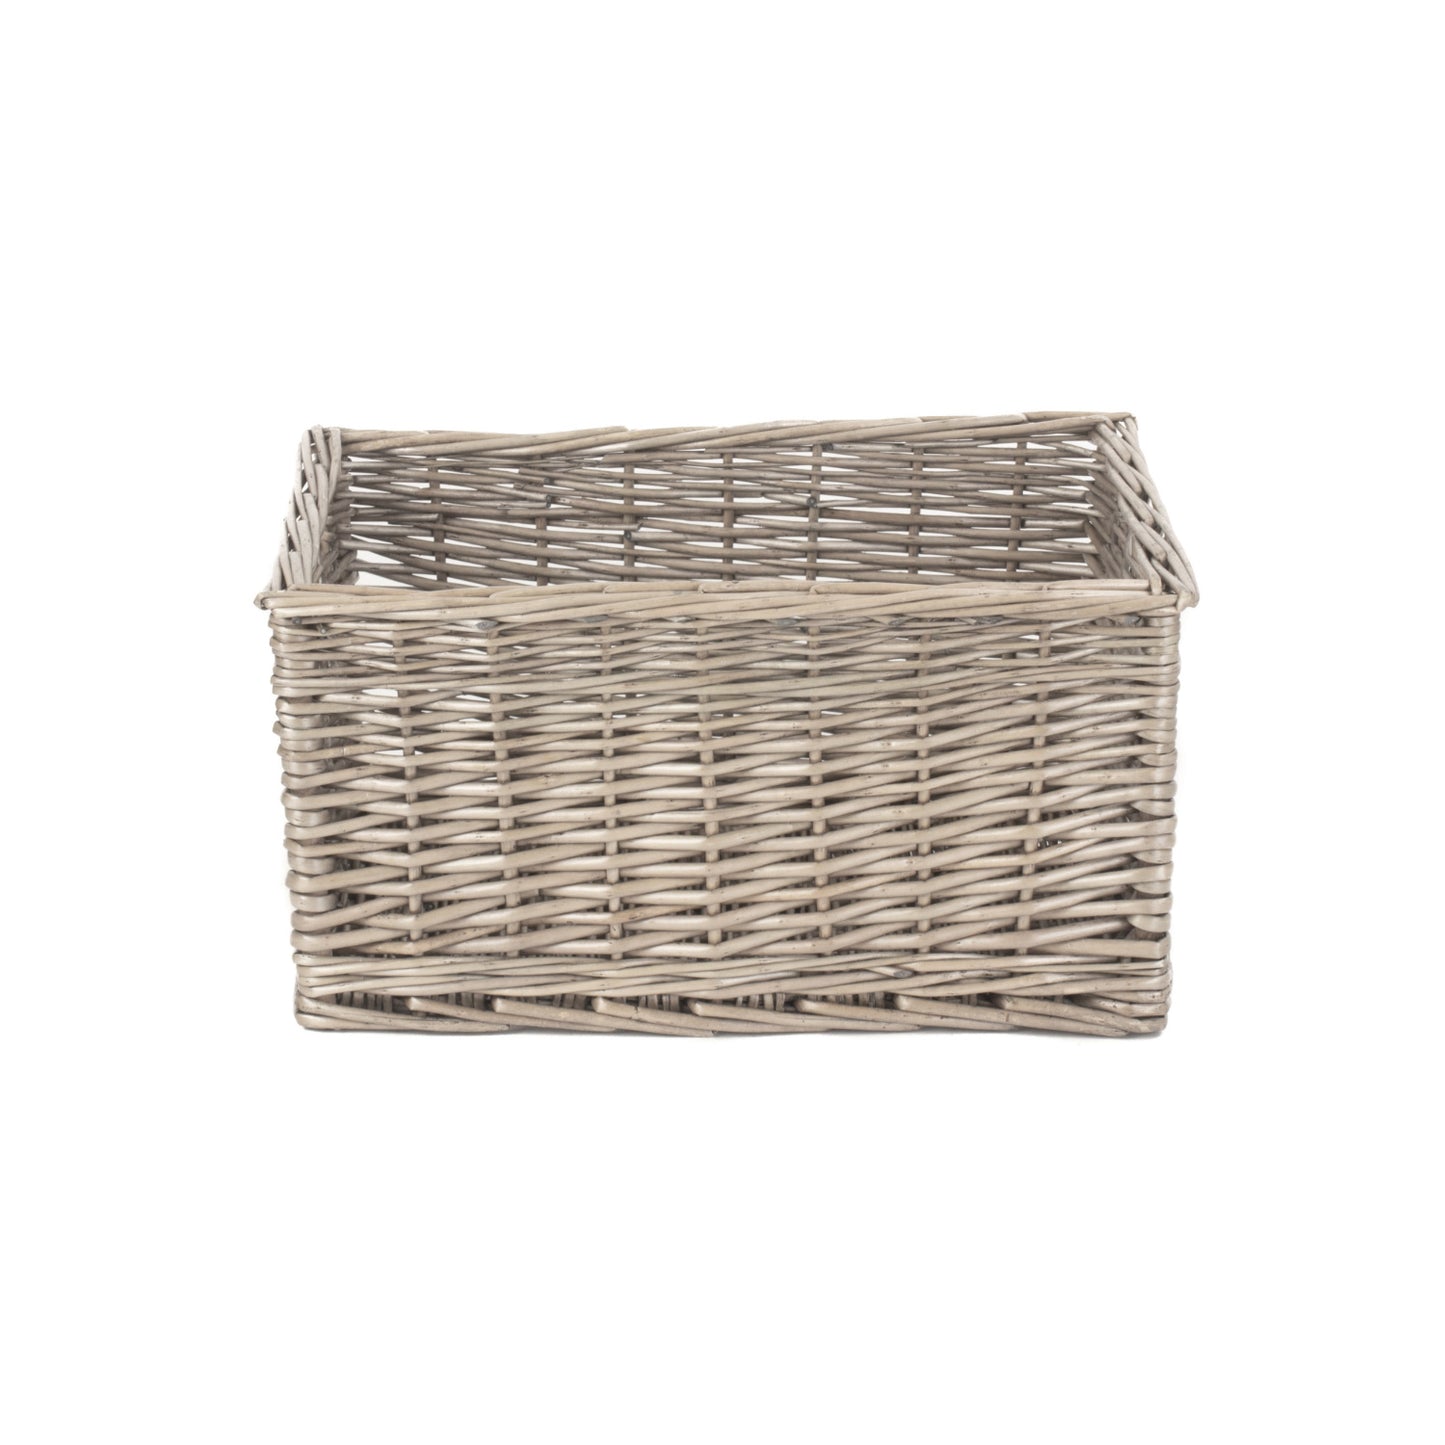 Medium Antique Wash Storage Basket